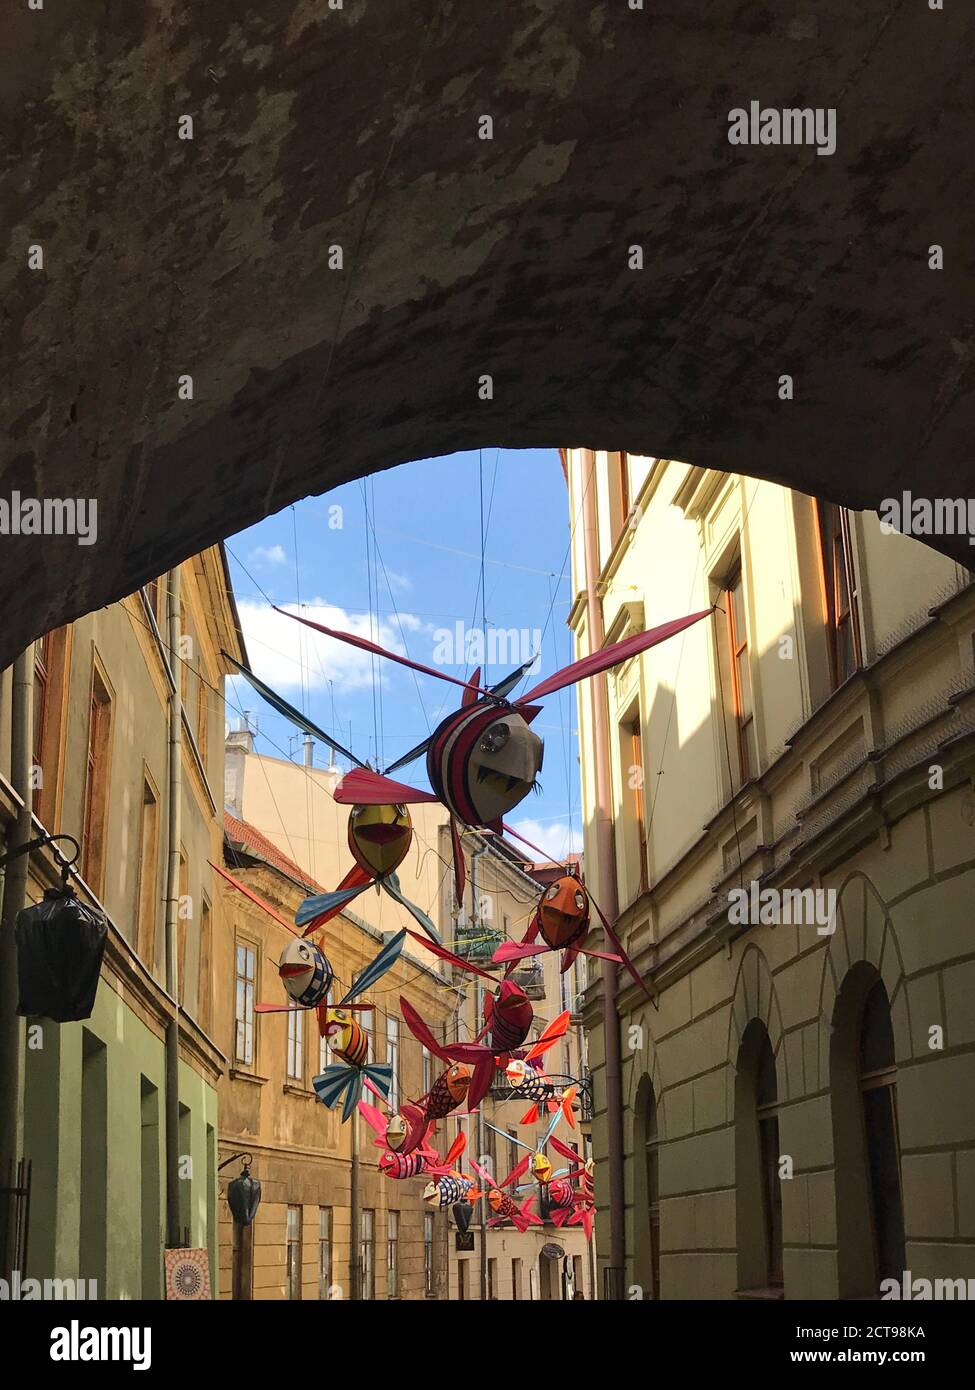 Installation artistique de poissons volants rue décorée dans la vieille ville de Lublin. Pittoresque place du marché. Poisson décoratif drôle. Une idée créative parfaite. Banque D'Images